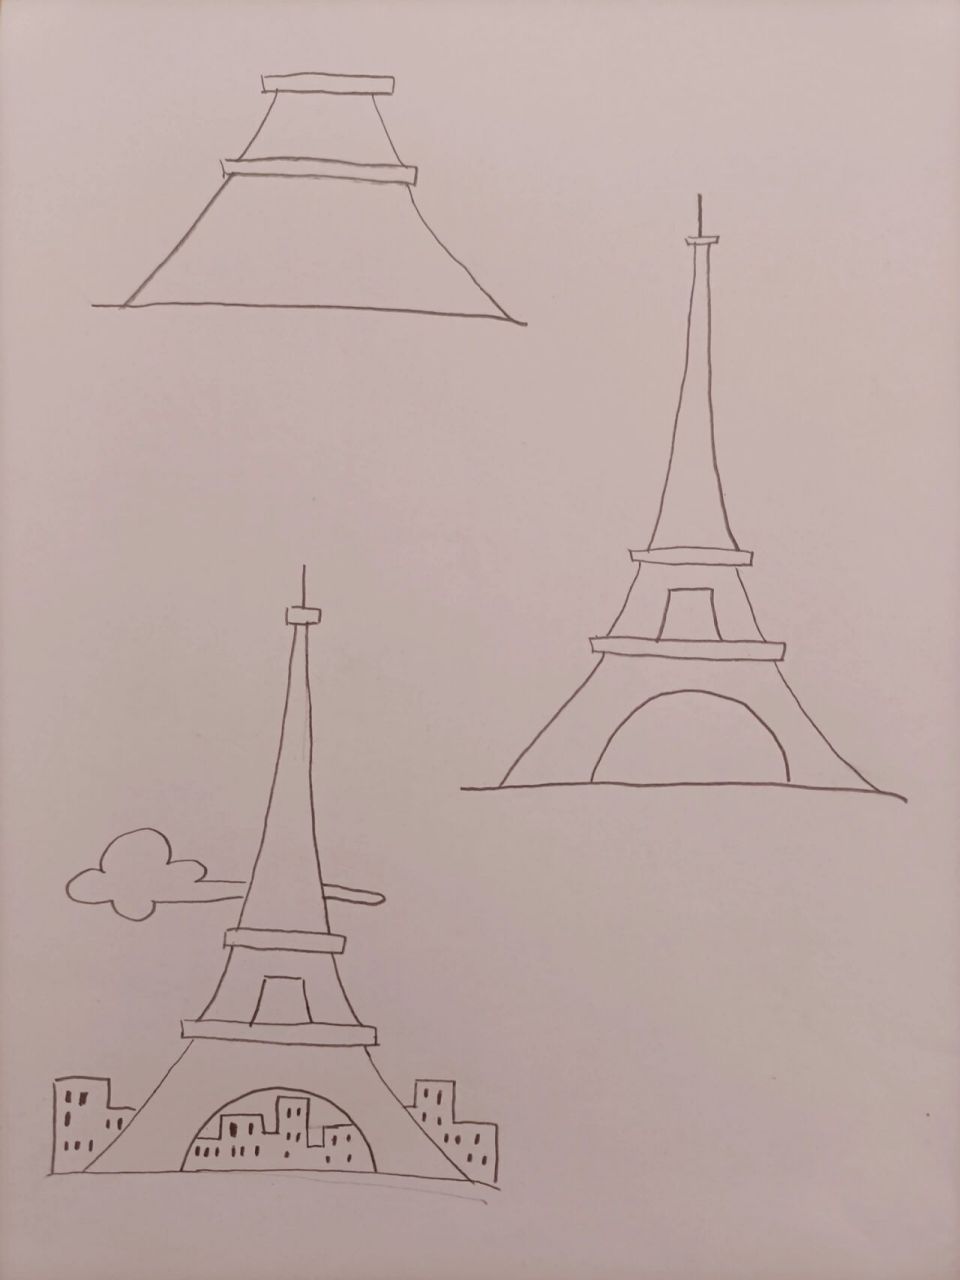 埃菲尔铁塔简笔画儿童图片